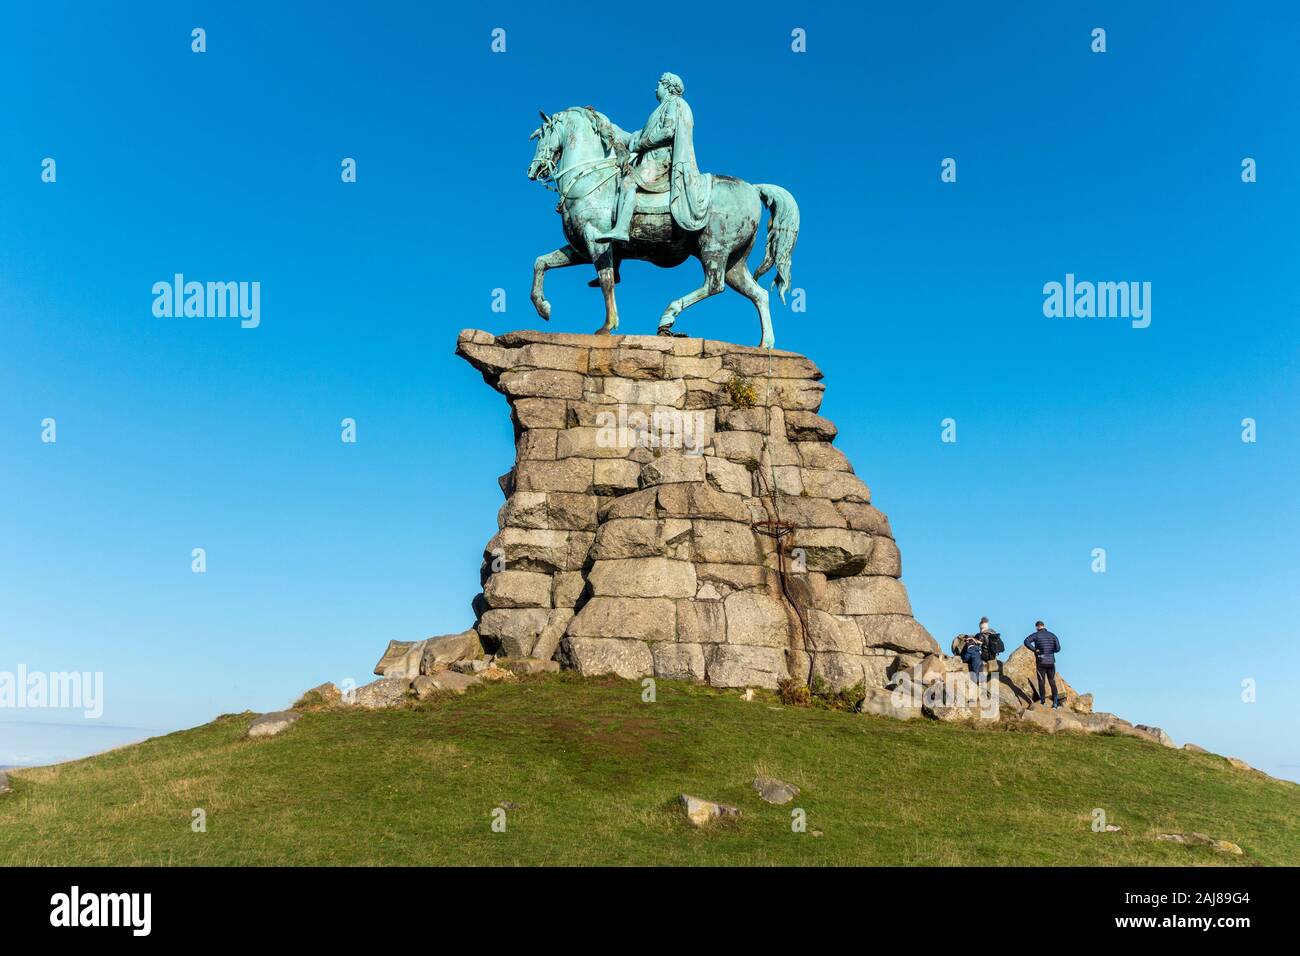 Il rame statua equestre del re George III come un Imperatore Romano sulla collina di neve sulla lunga passeggiata in Windsor Great Park, Windsor, Berkshire, Inghilterra, Regno Unito Foto Stock